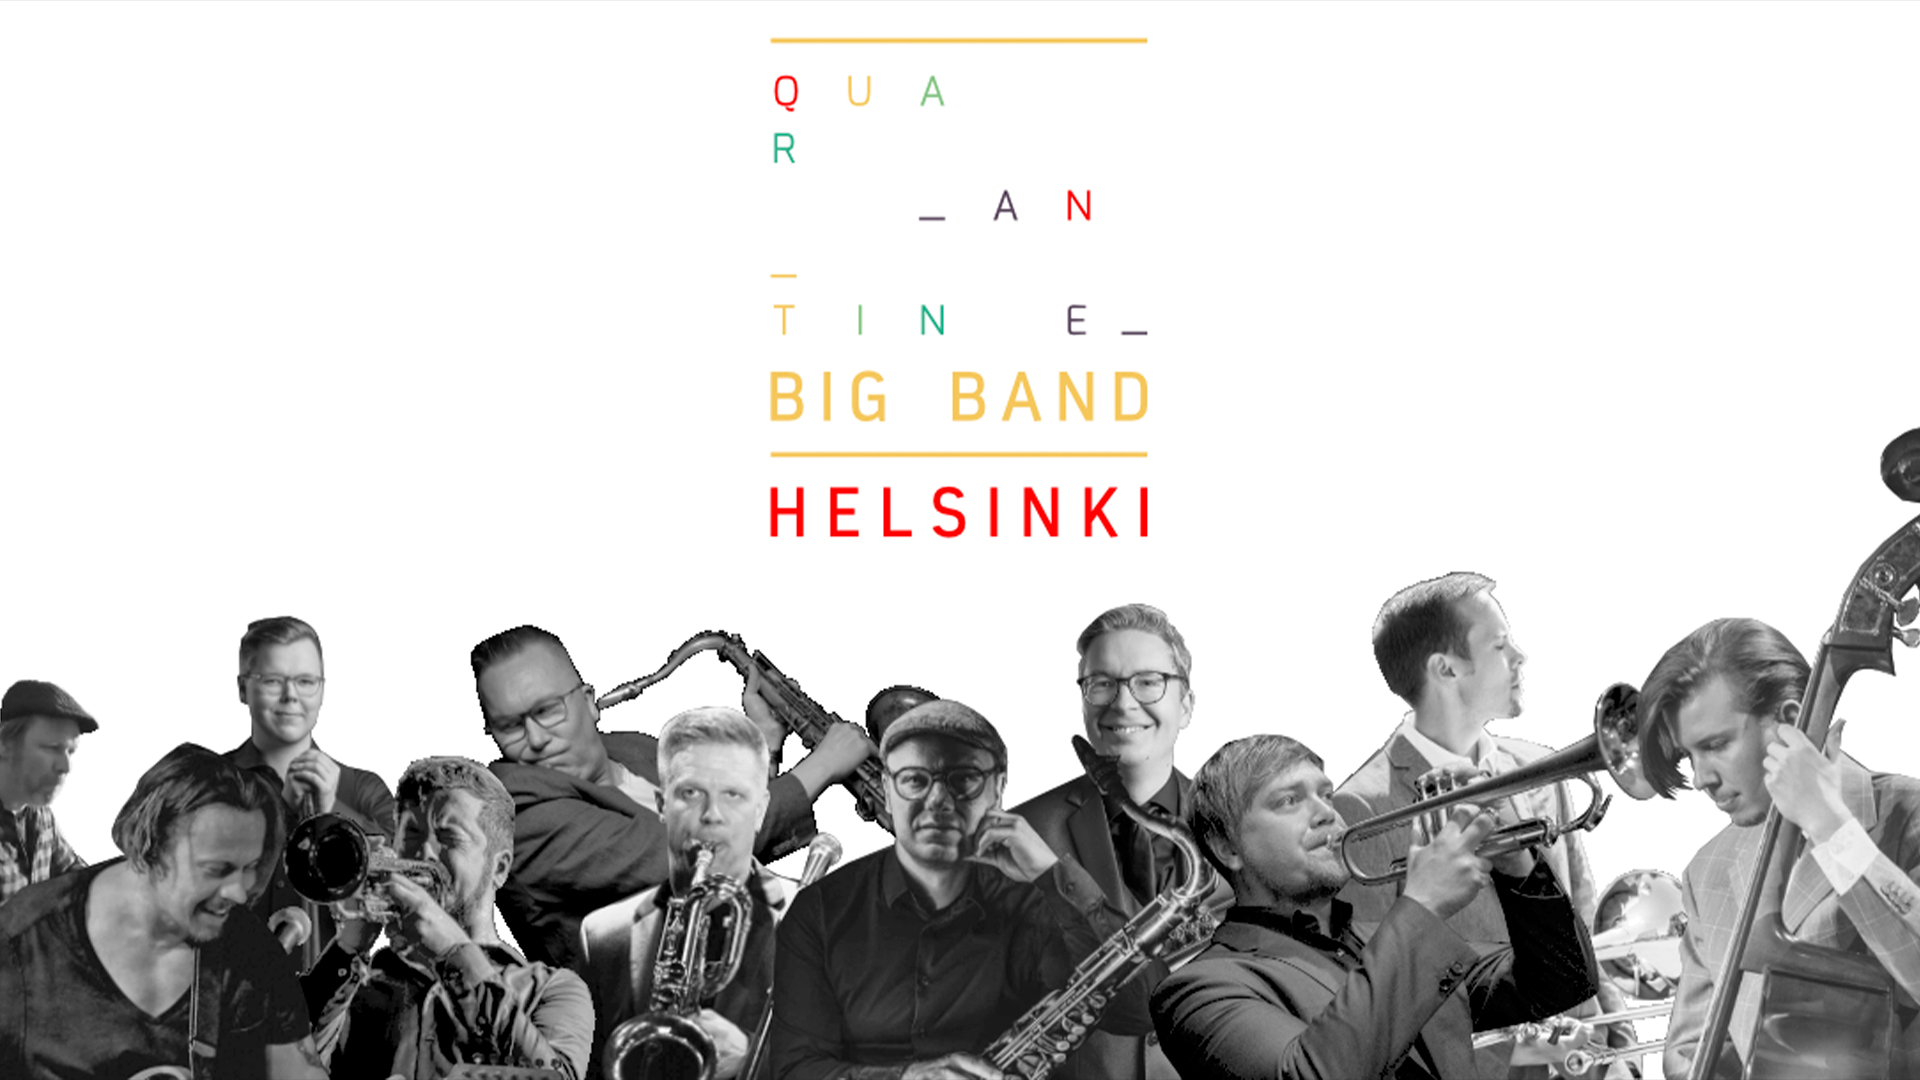 Quarantine Big Band Helsingin muusikot sekä bändin logo.